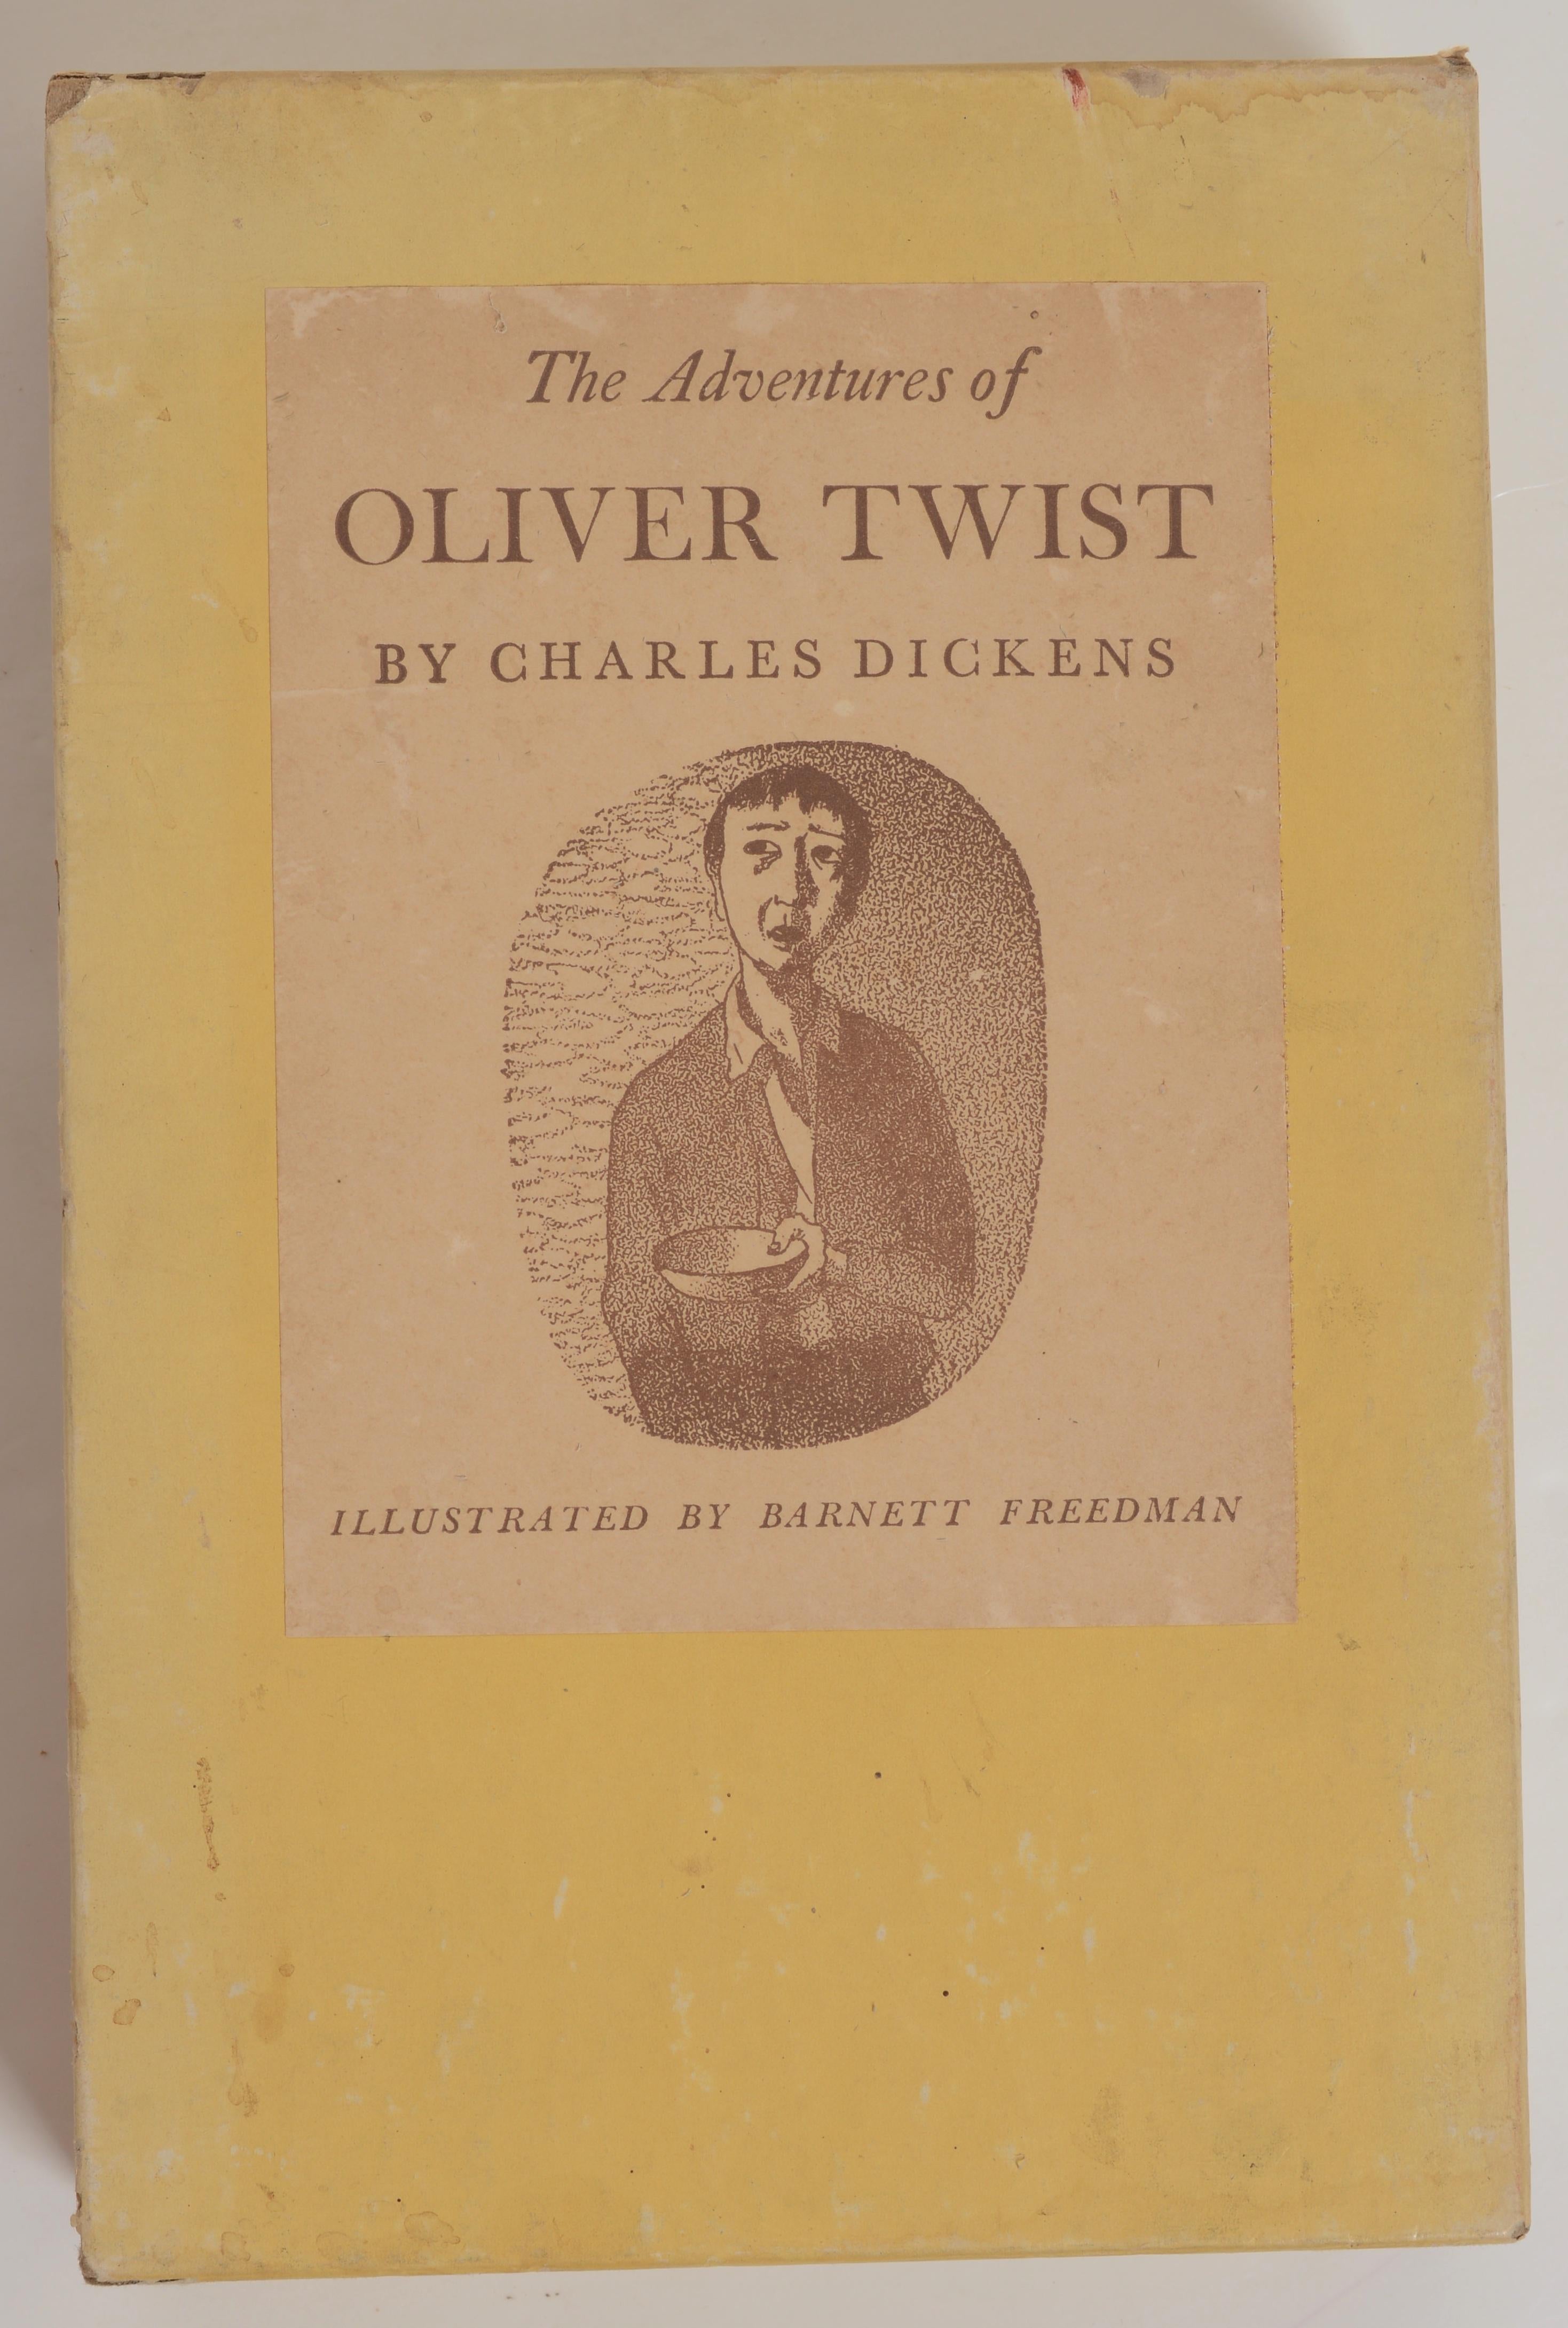 Die Abenteuer des Oliver Twist, von Charles Dickens. 1st Ed So Hardcover mit Schuber. Oliver Twist, or the Parish Boy's Progress, Charles Dickens' zweiter Roman, wurde von 1837 bis 1839 als Fortsetzungsroman und 1838 als dreibändiges Buch